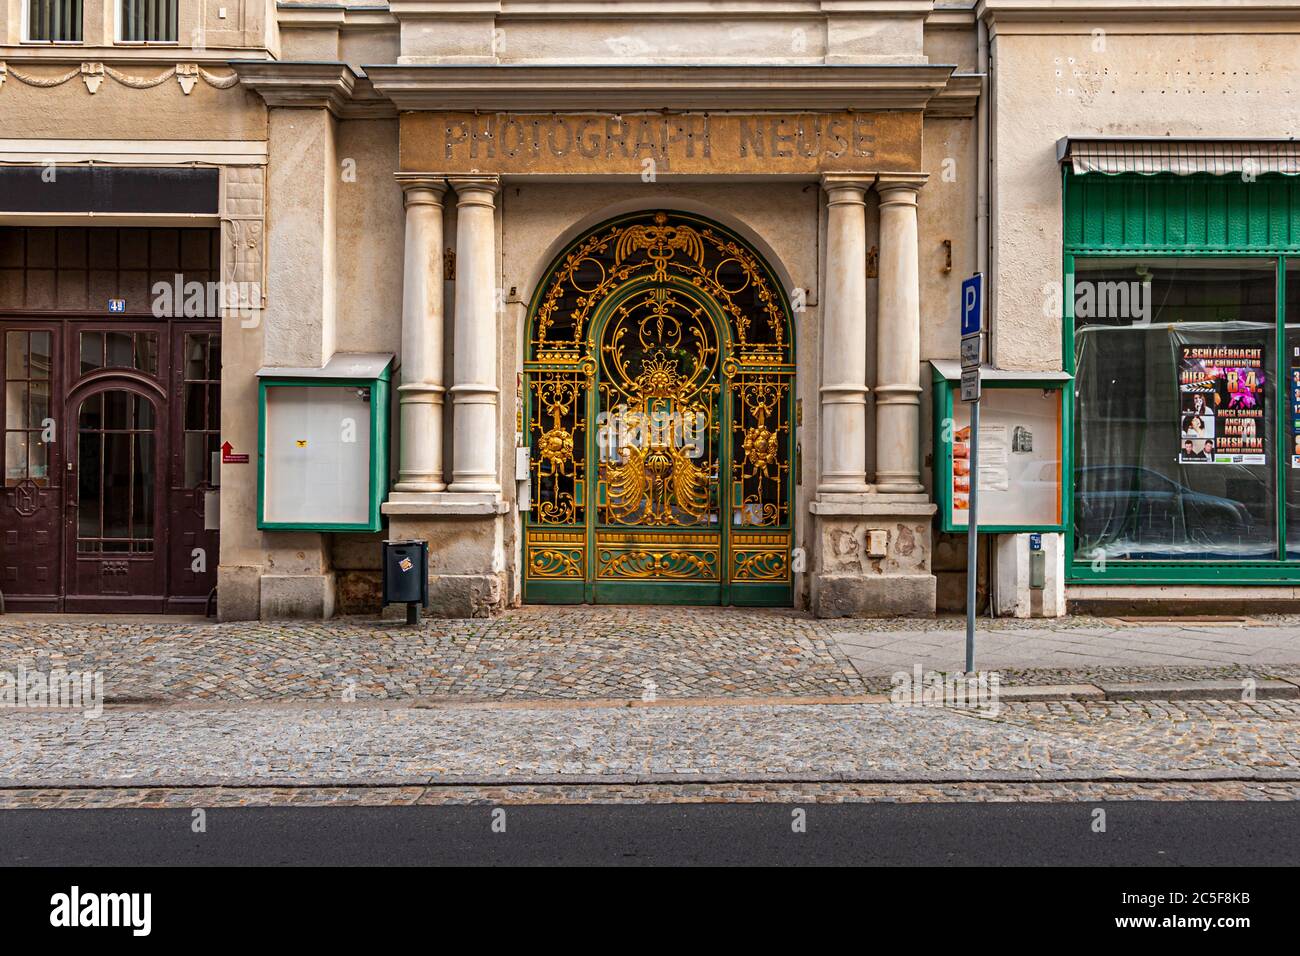 Splendide portail d'entrée forgé doré au studio du photographe Neuse à Görlitz, Allemagne Banque D'Images